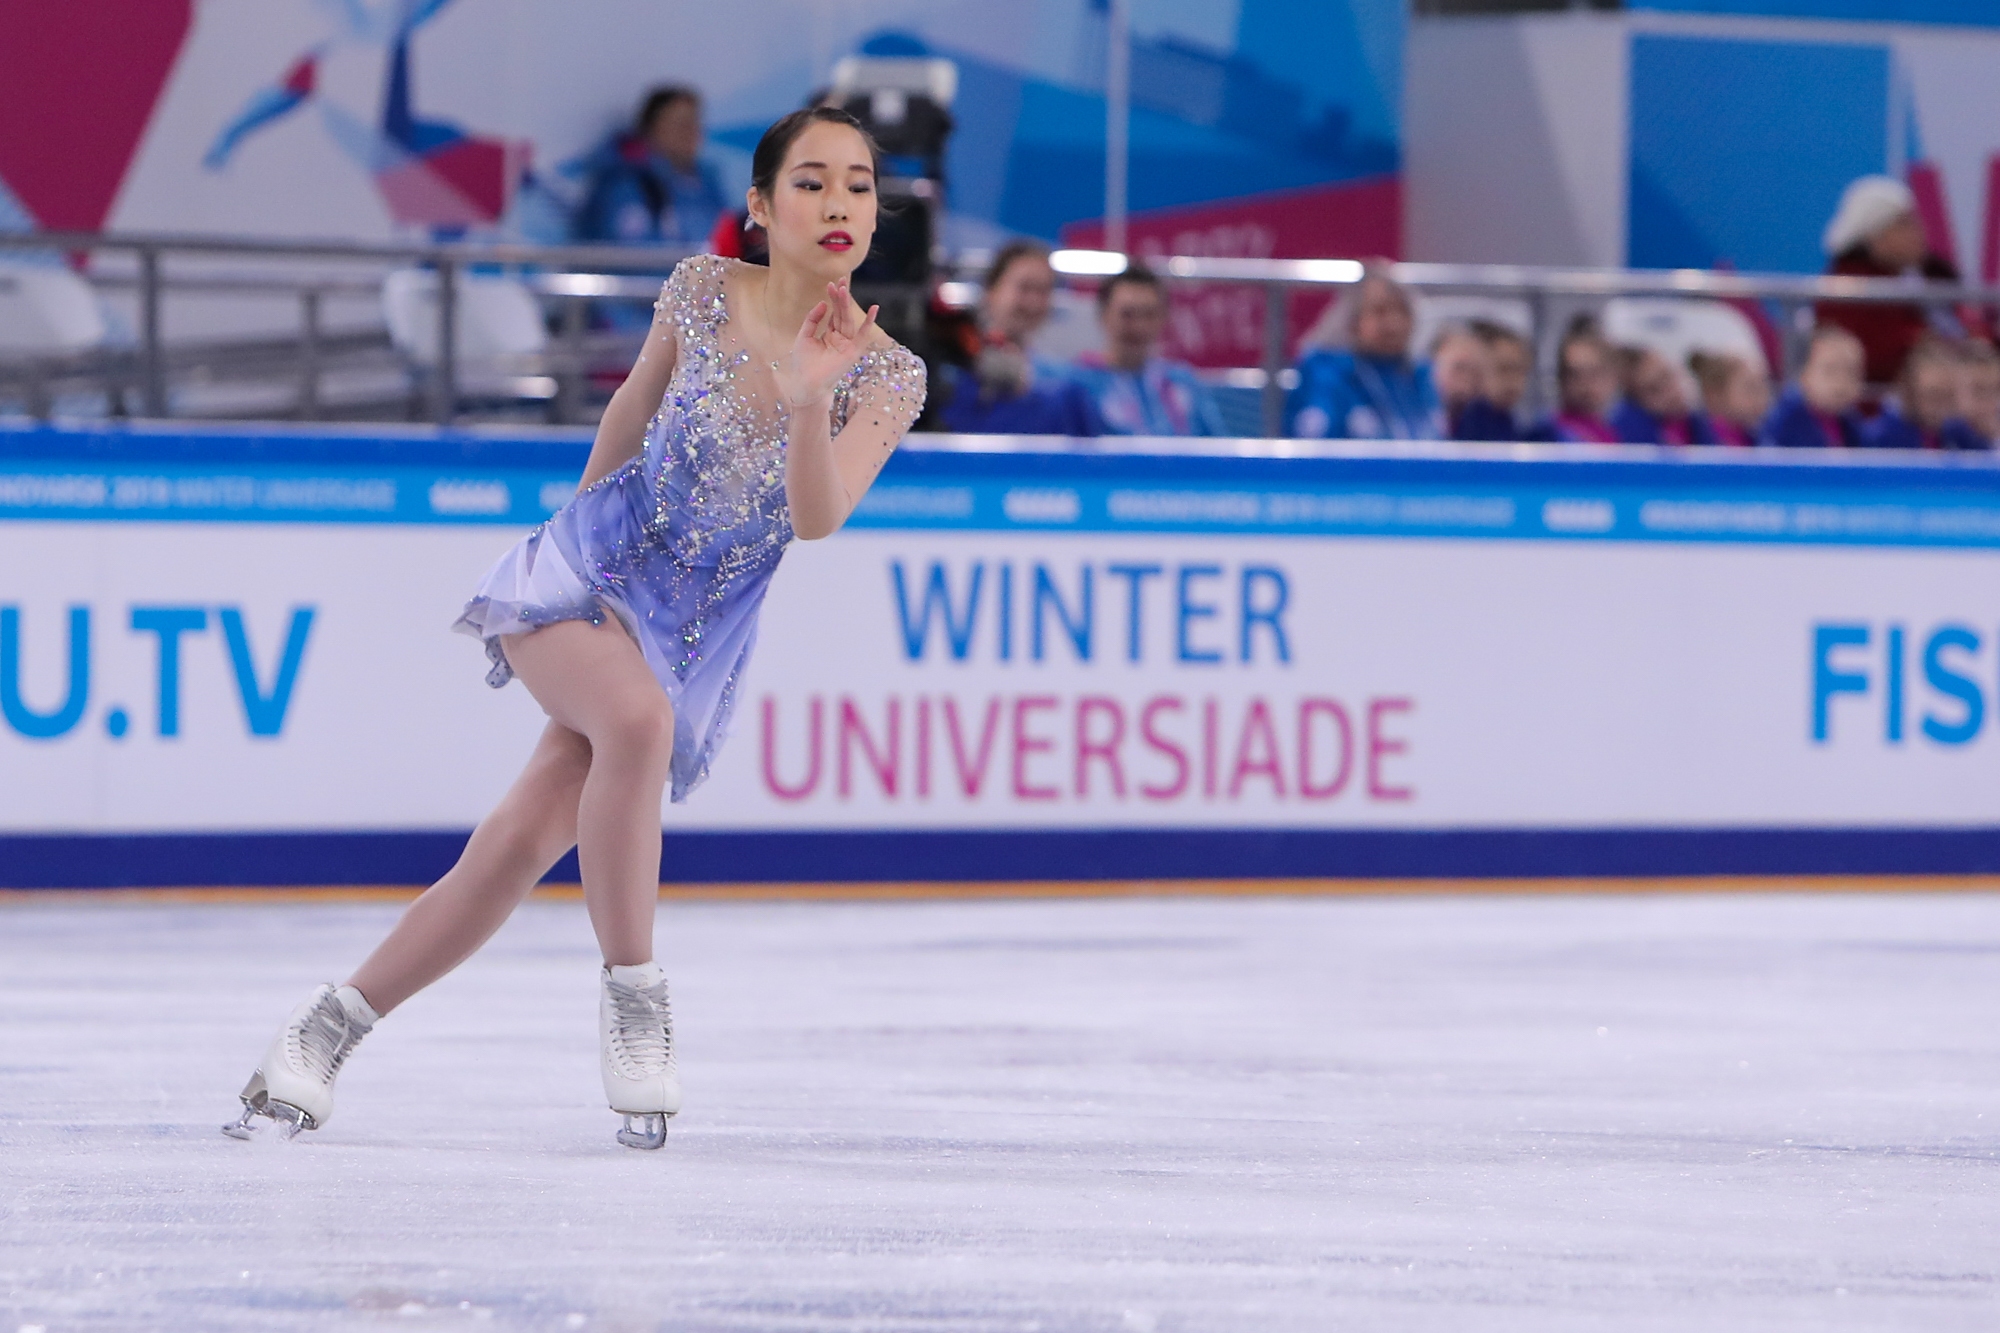 Japan's Mai Mihara would emerge as the champion ©Krasnoyarsk 2019